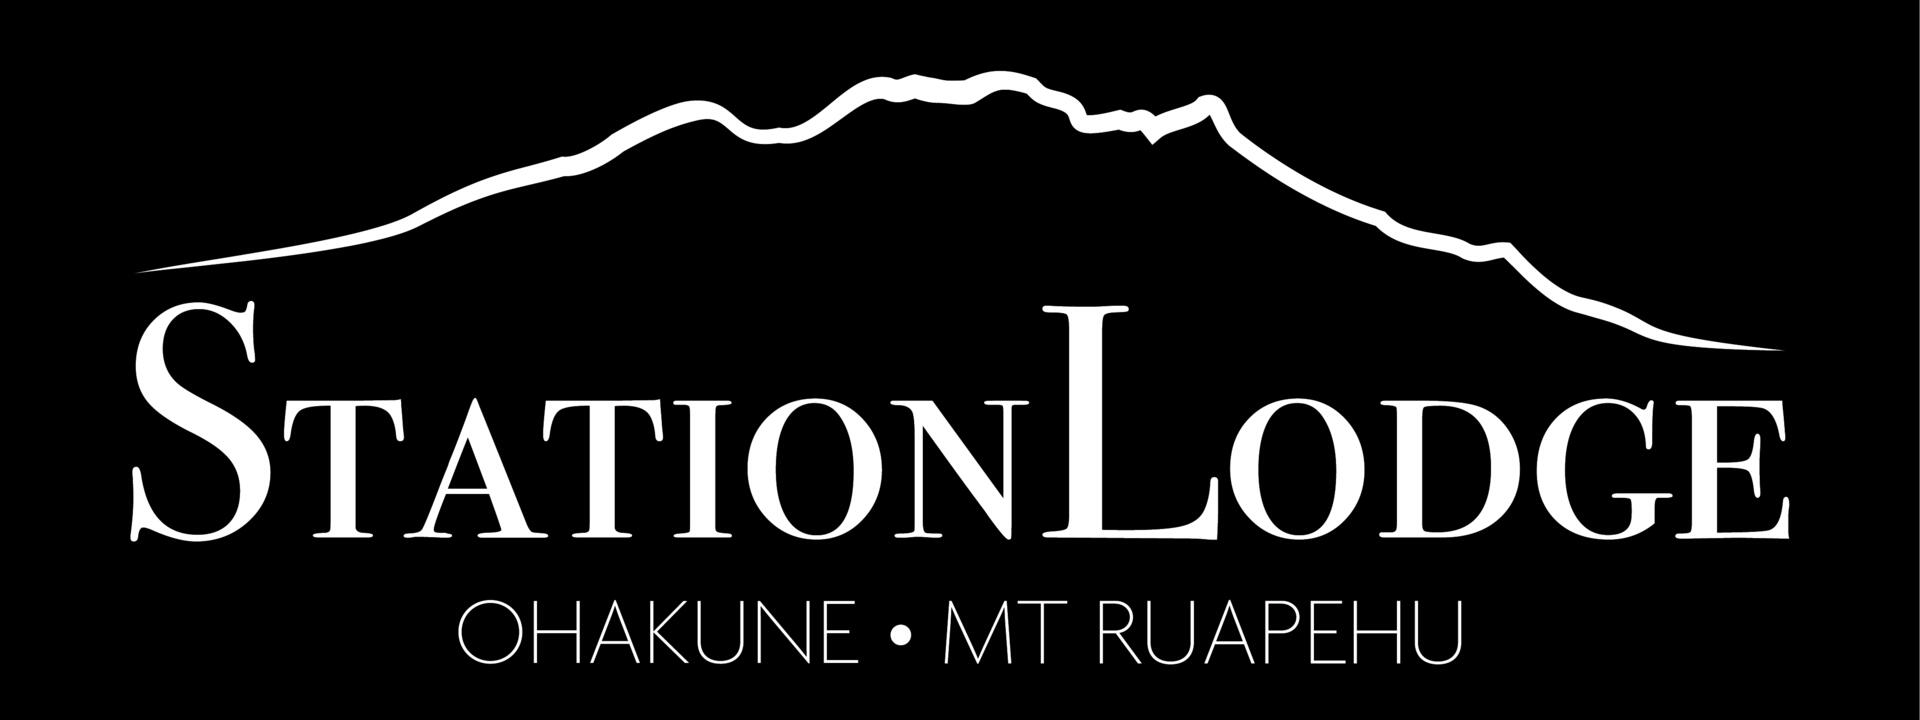 sation-lodge-logo-05.jpg